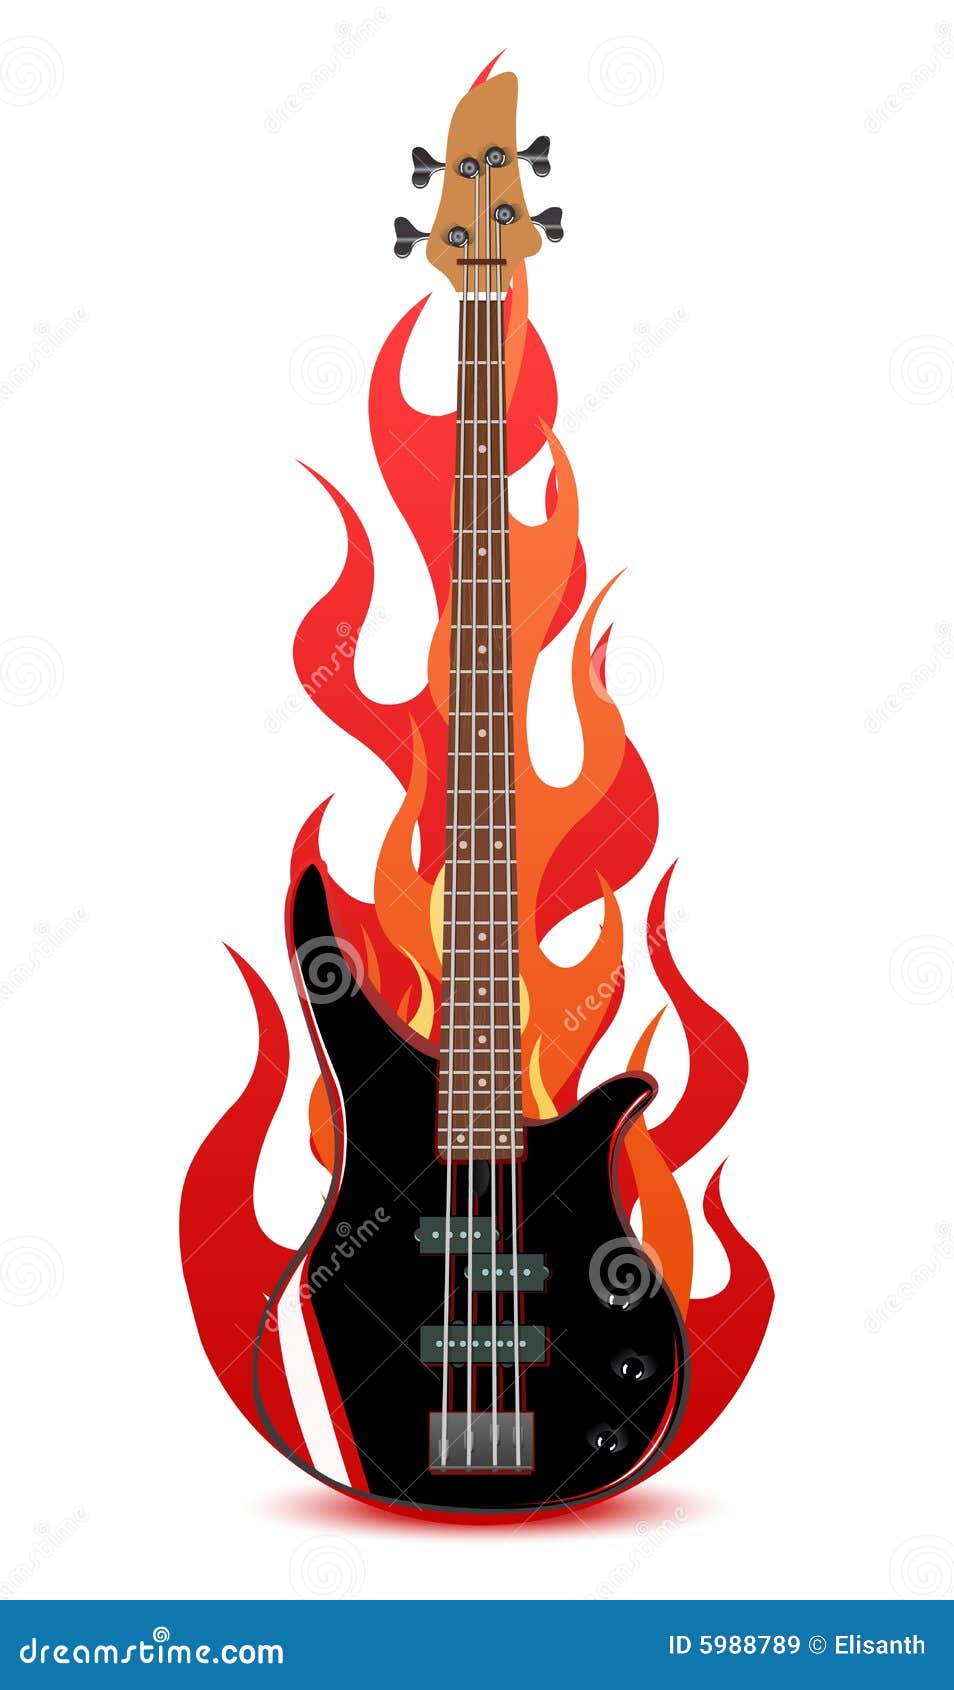 Bass Guitar Vector